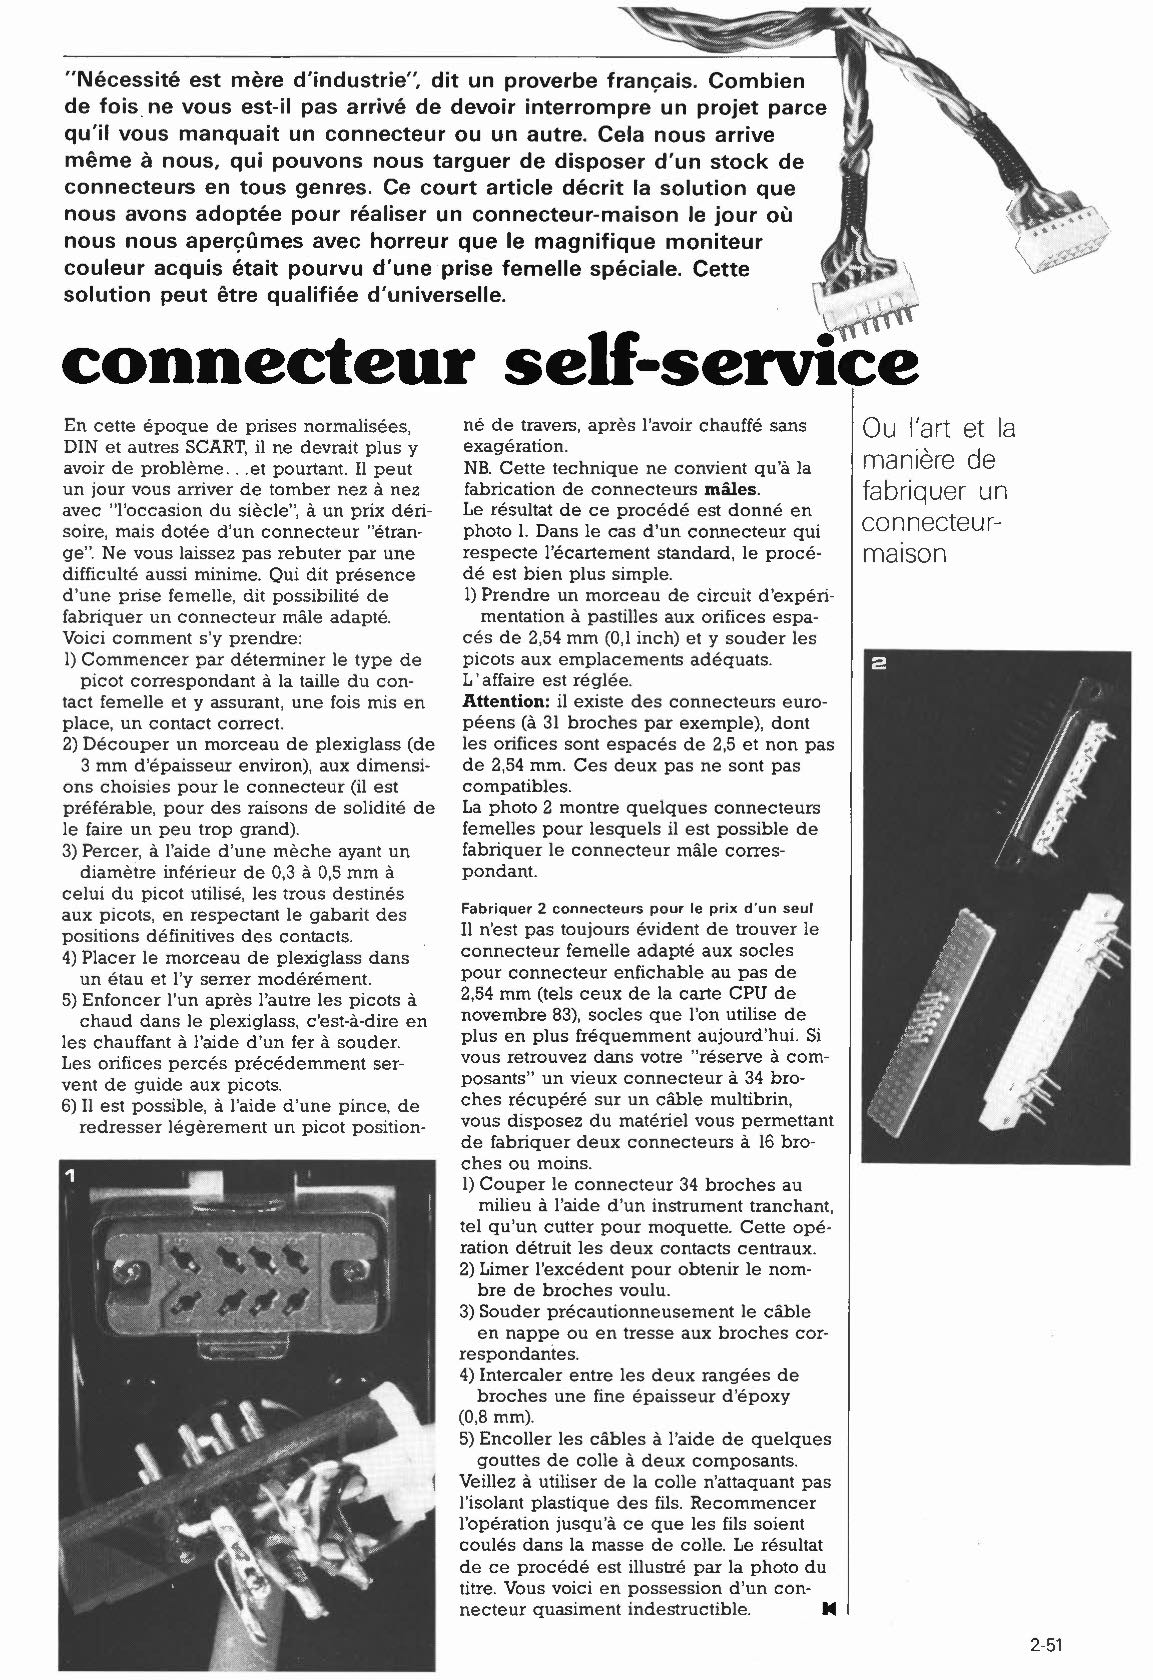 connecteur self-service